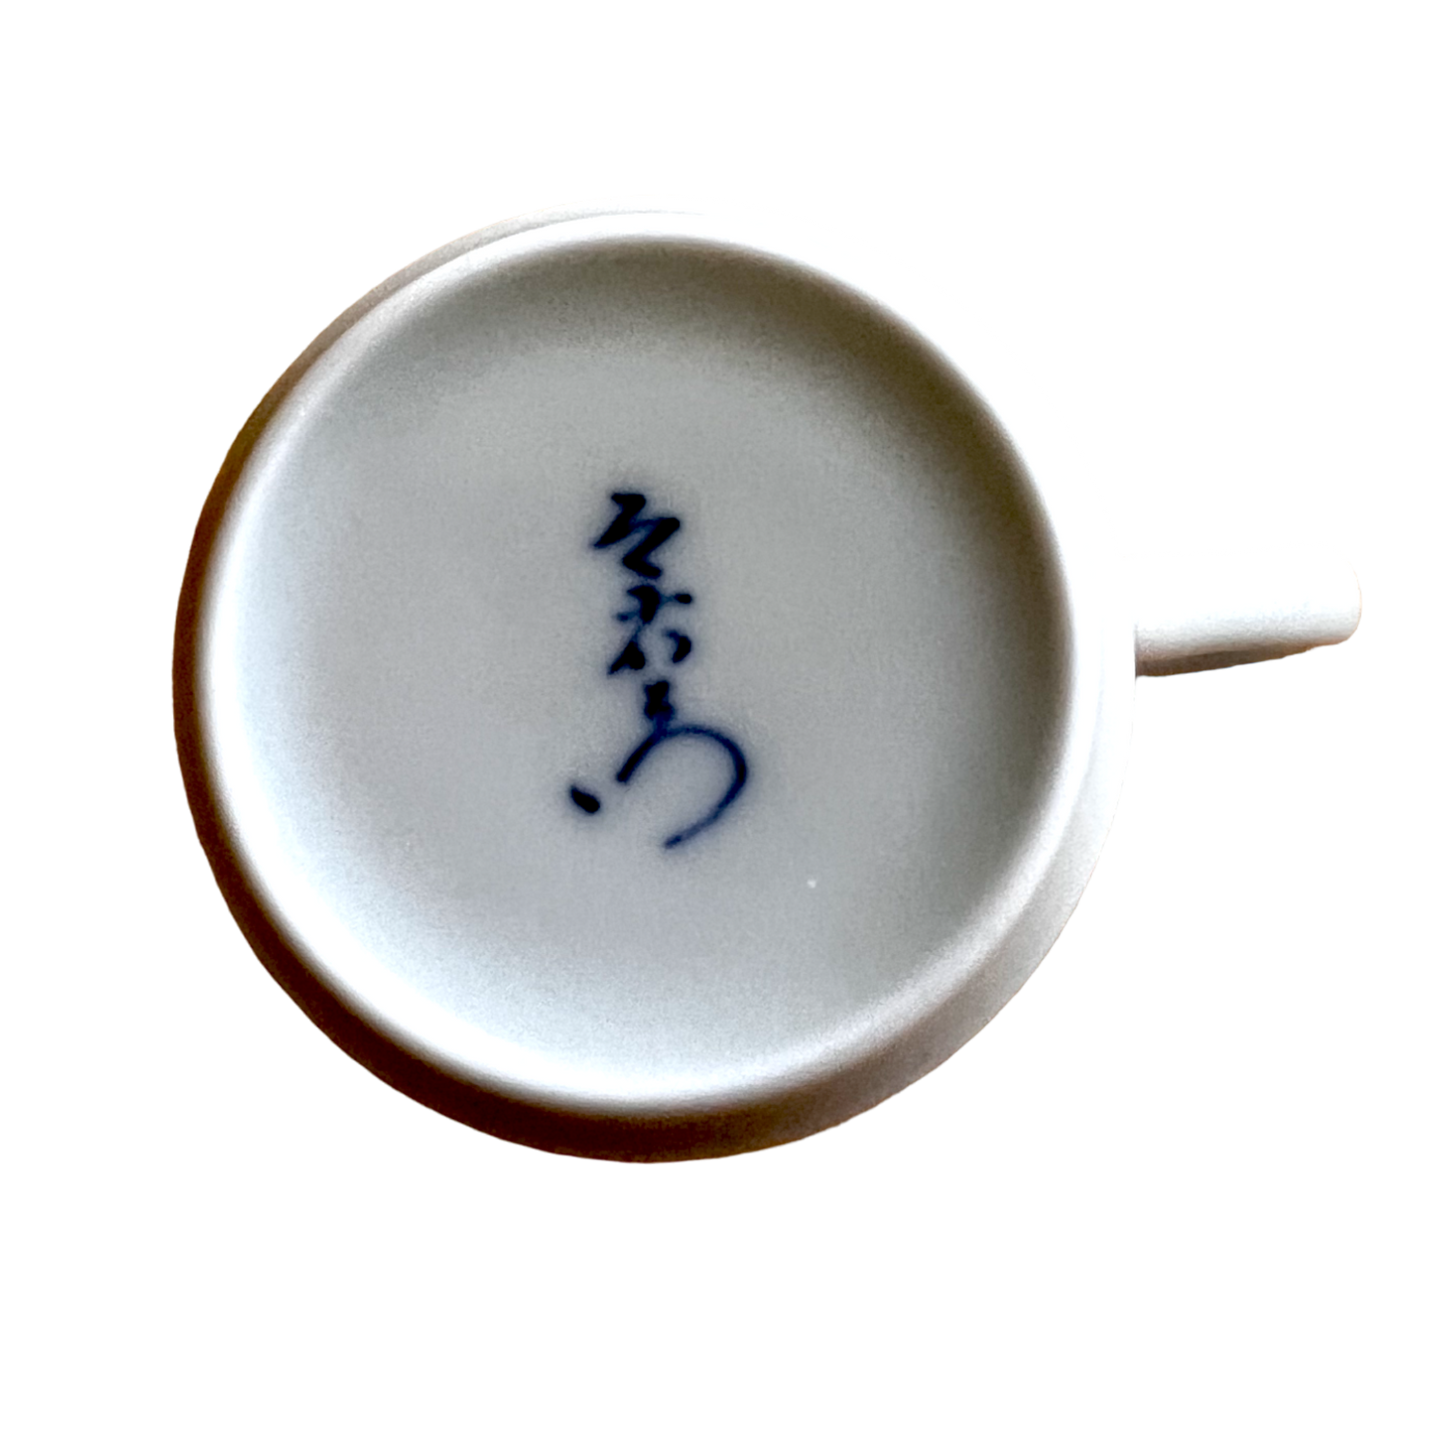 Living National Treasure: Imaemon Imaizumi 13th Vintage Teacup Candle